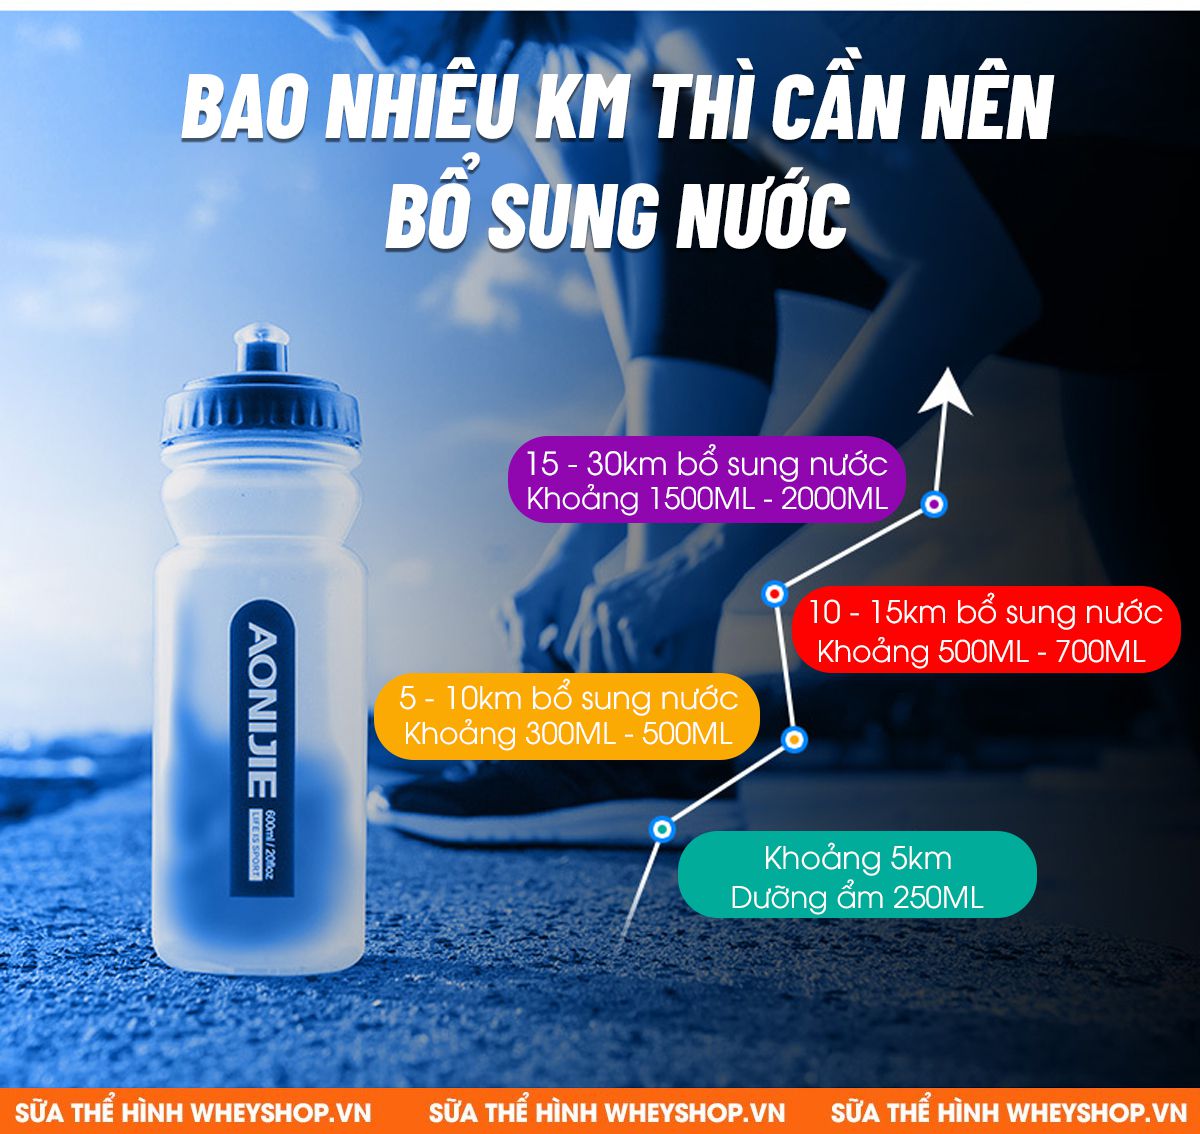 Bình nước thể thao Aonijie SH600 là mẫu bình nước nhập khẩu cao cấp hỗ trợ dung tích tới 600ml cho người chơi thể thao, chạy bộ, đạp xe,... giá rẻ tốt nhất...